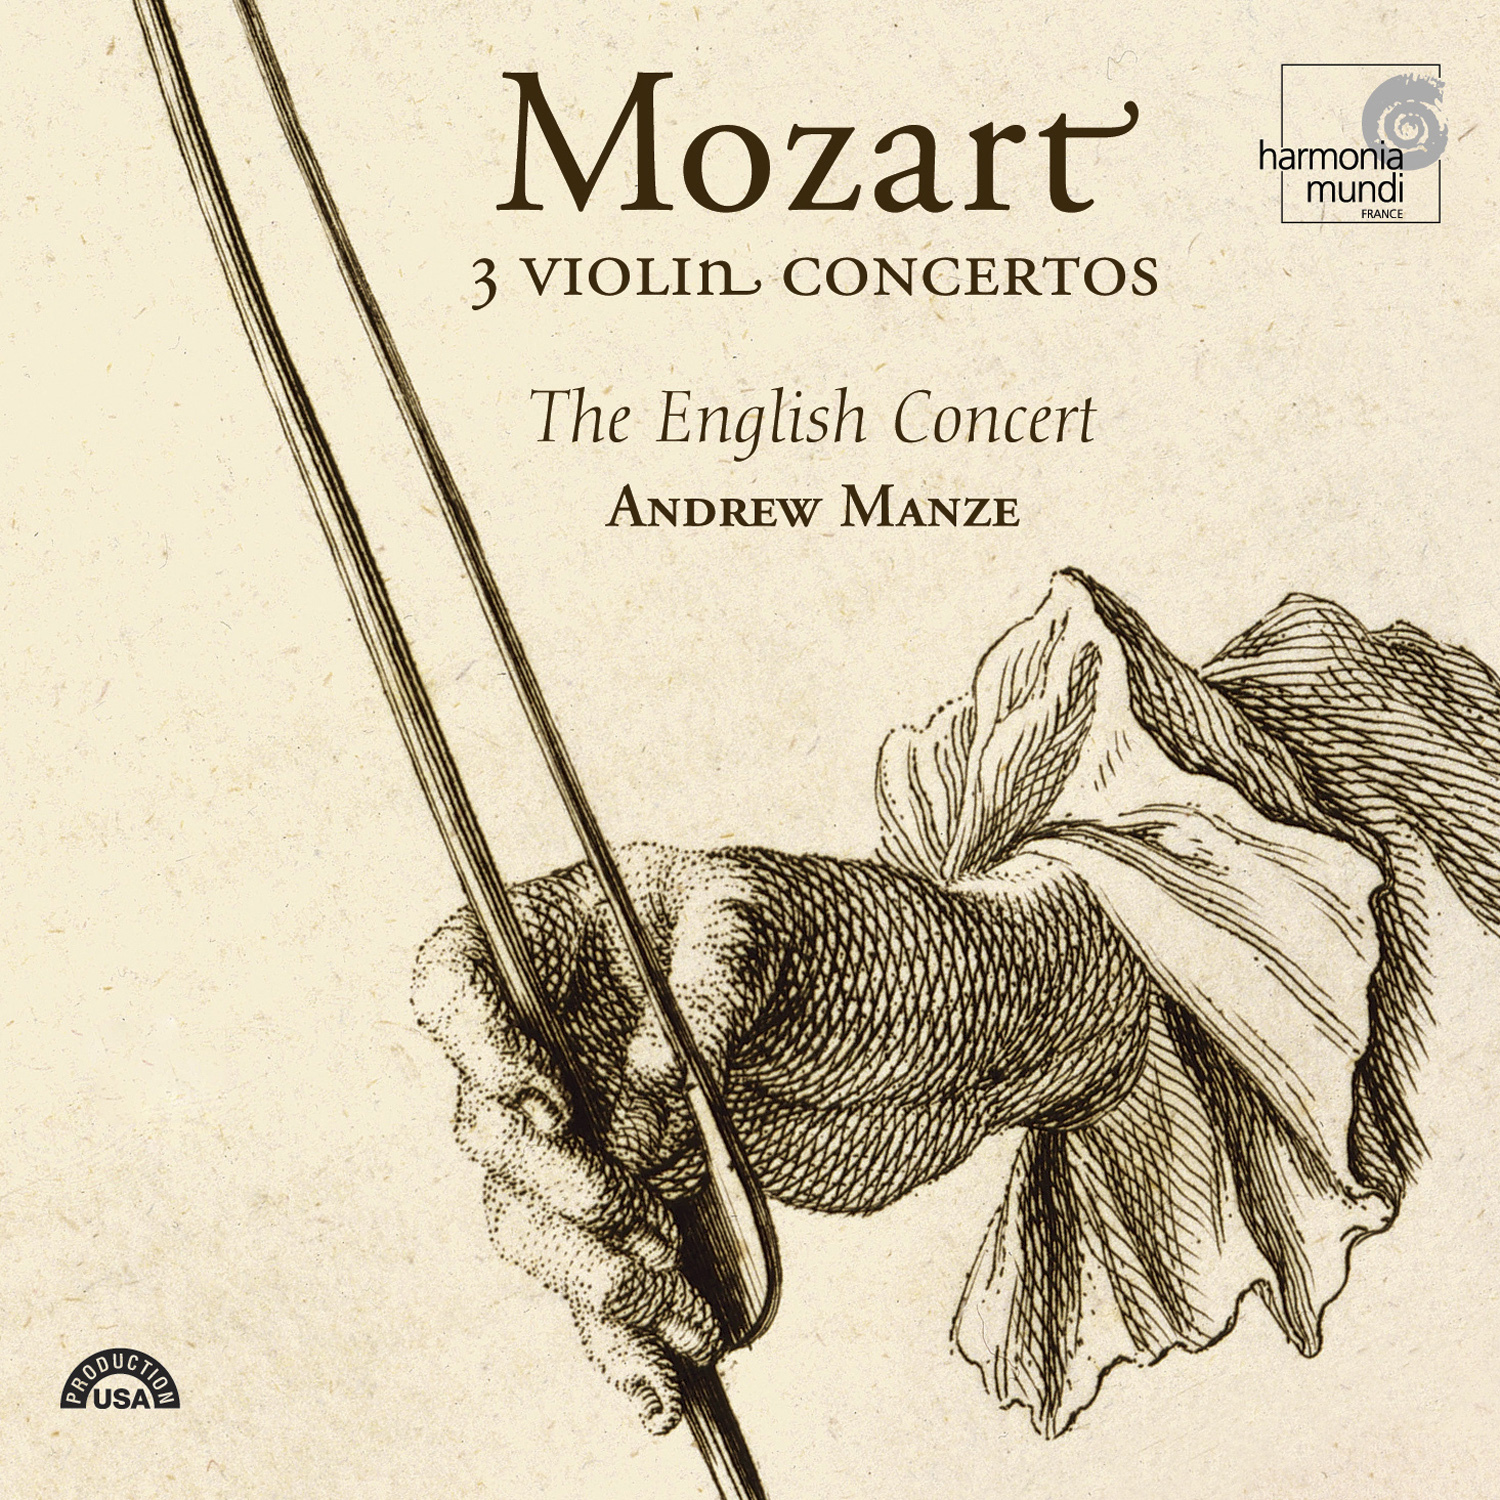 Violin Concerto No. 4 in D major, K. 218: II. Andante cantabile